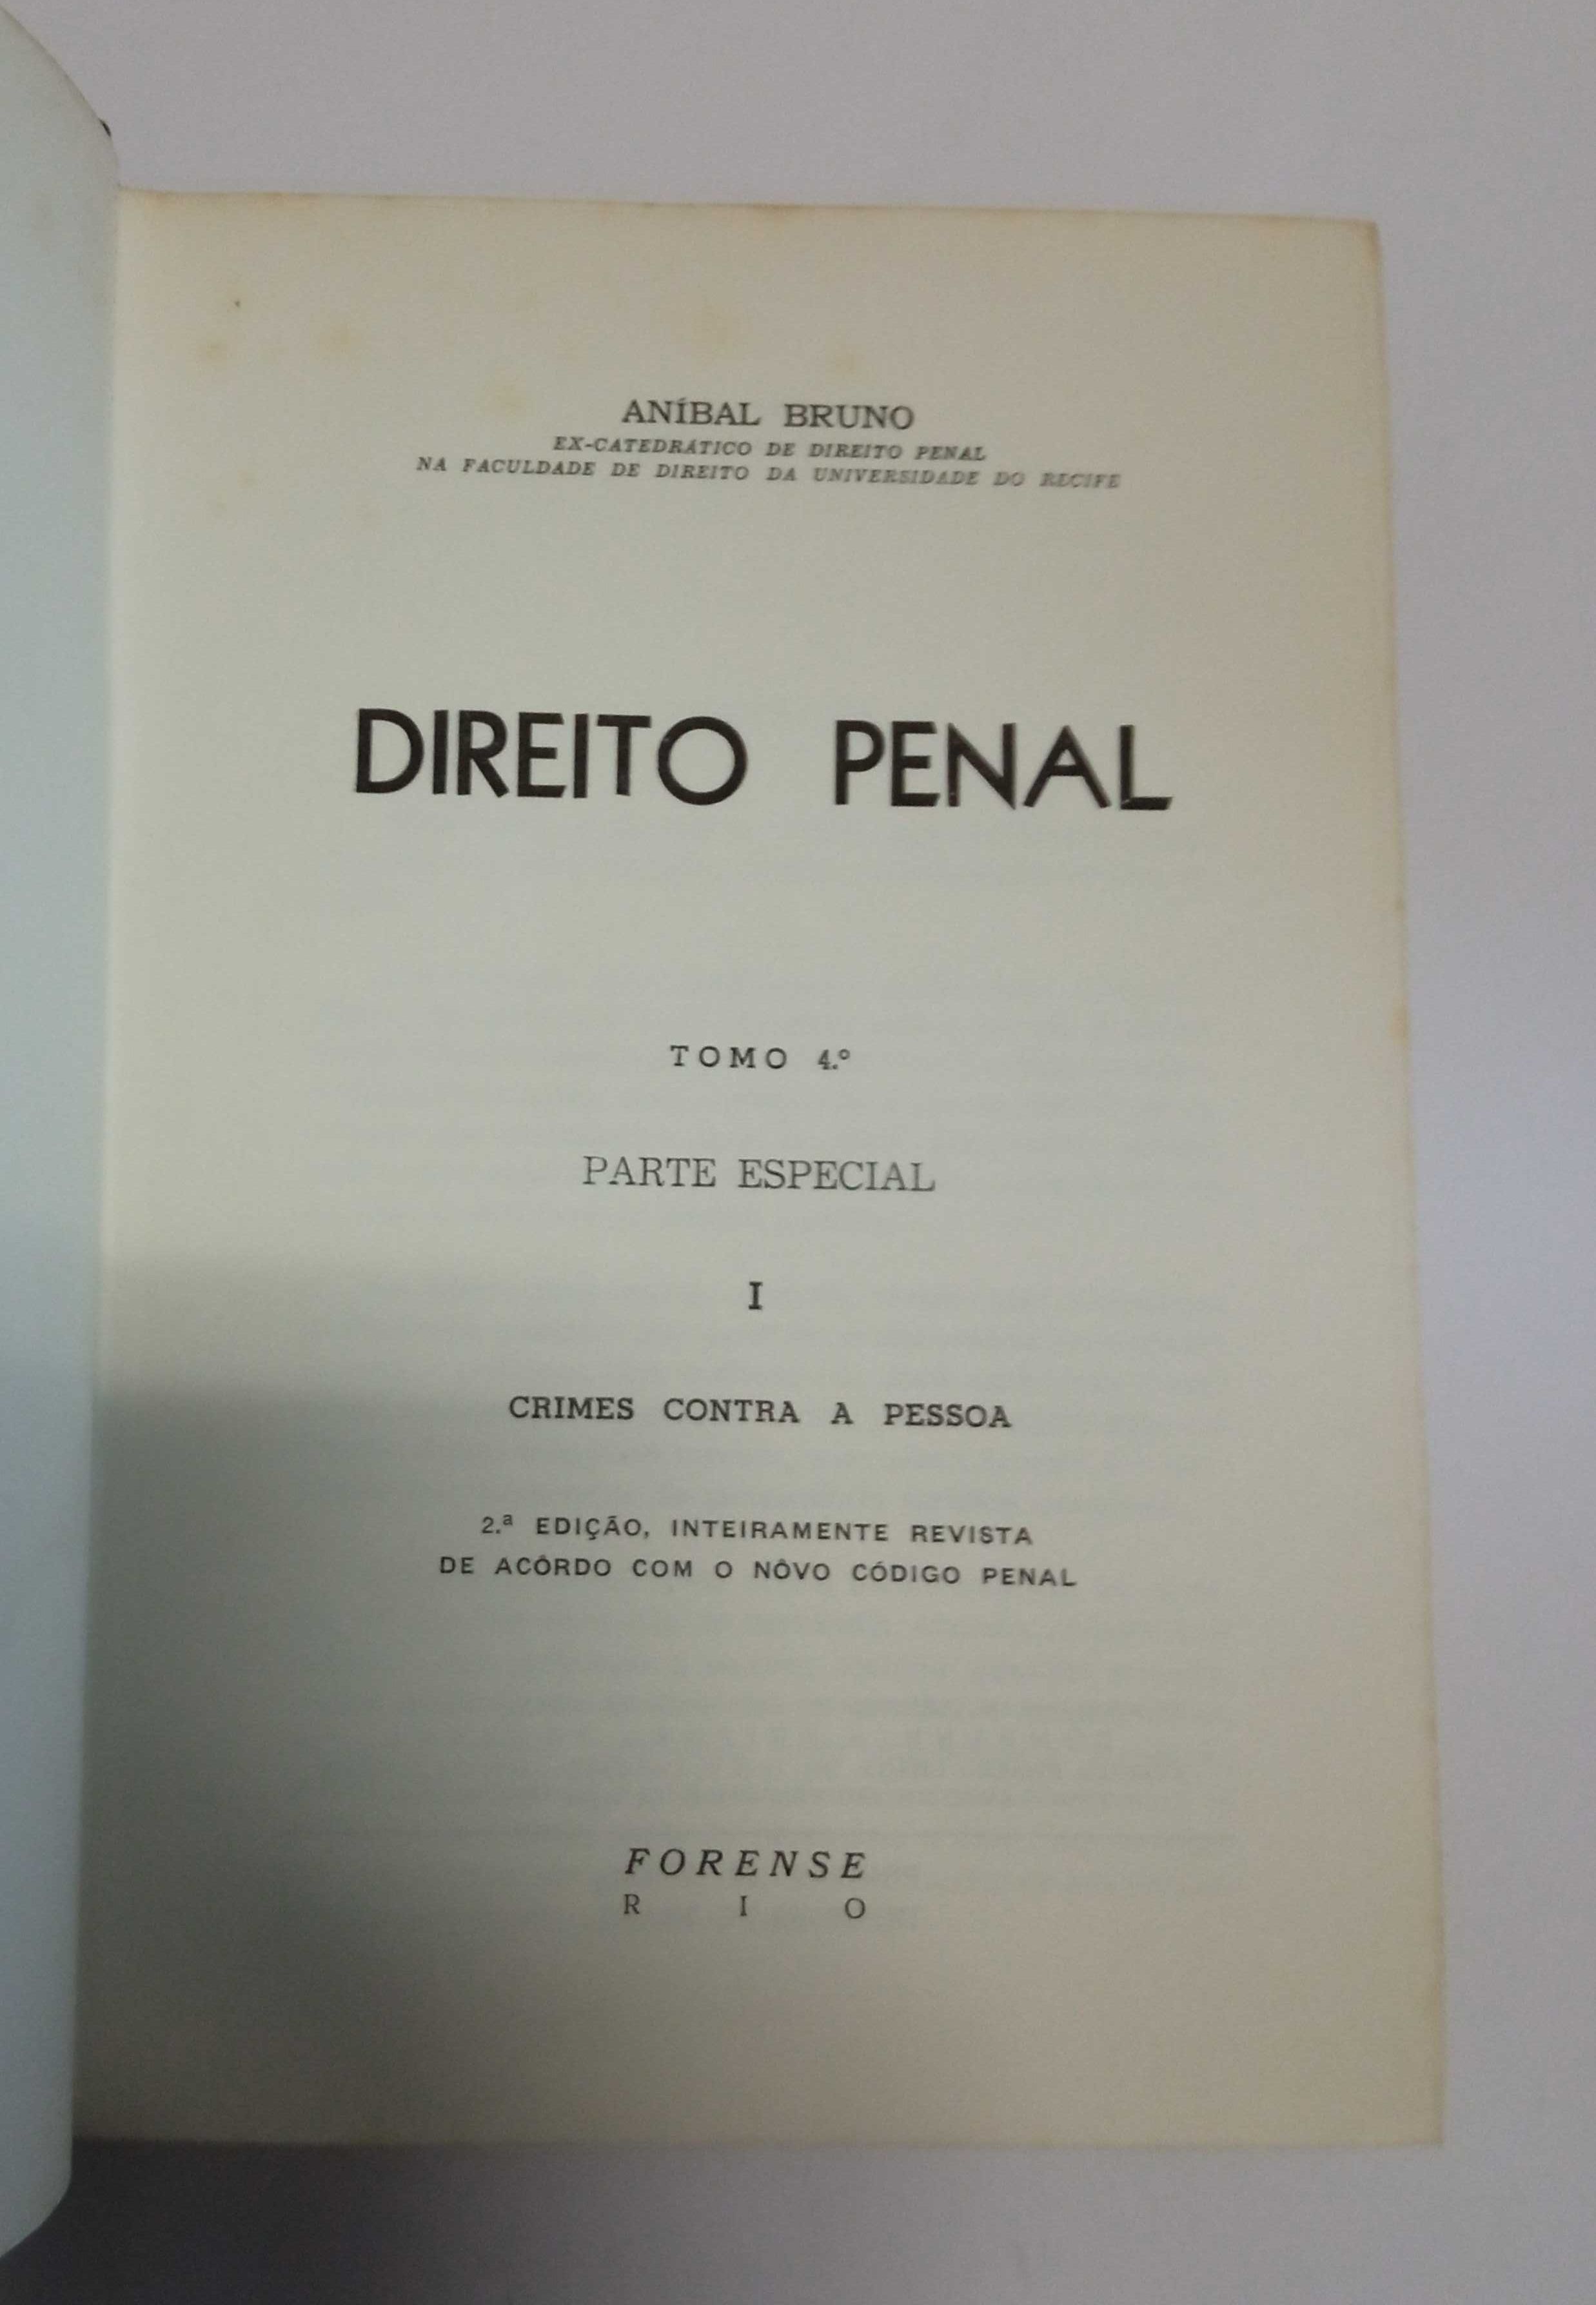 Direito Penal, de Aníbal Bruno